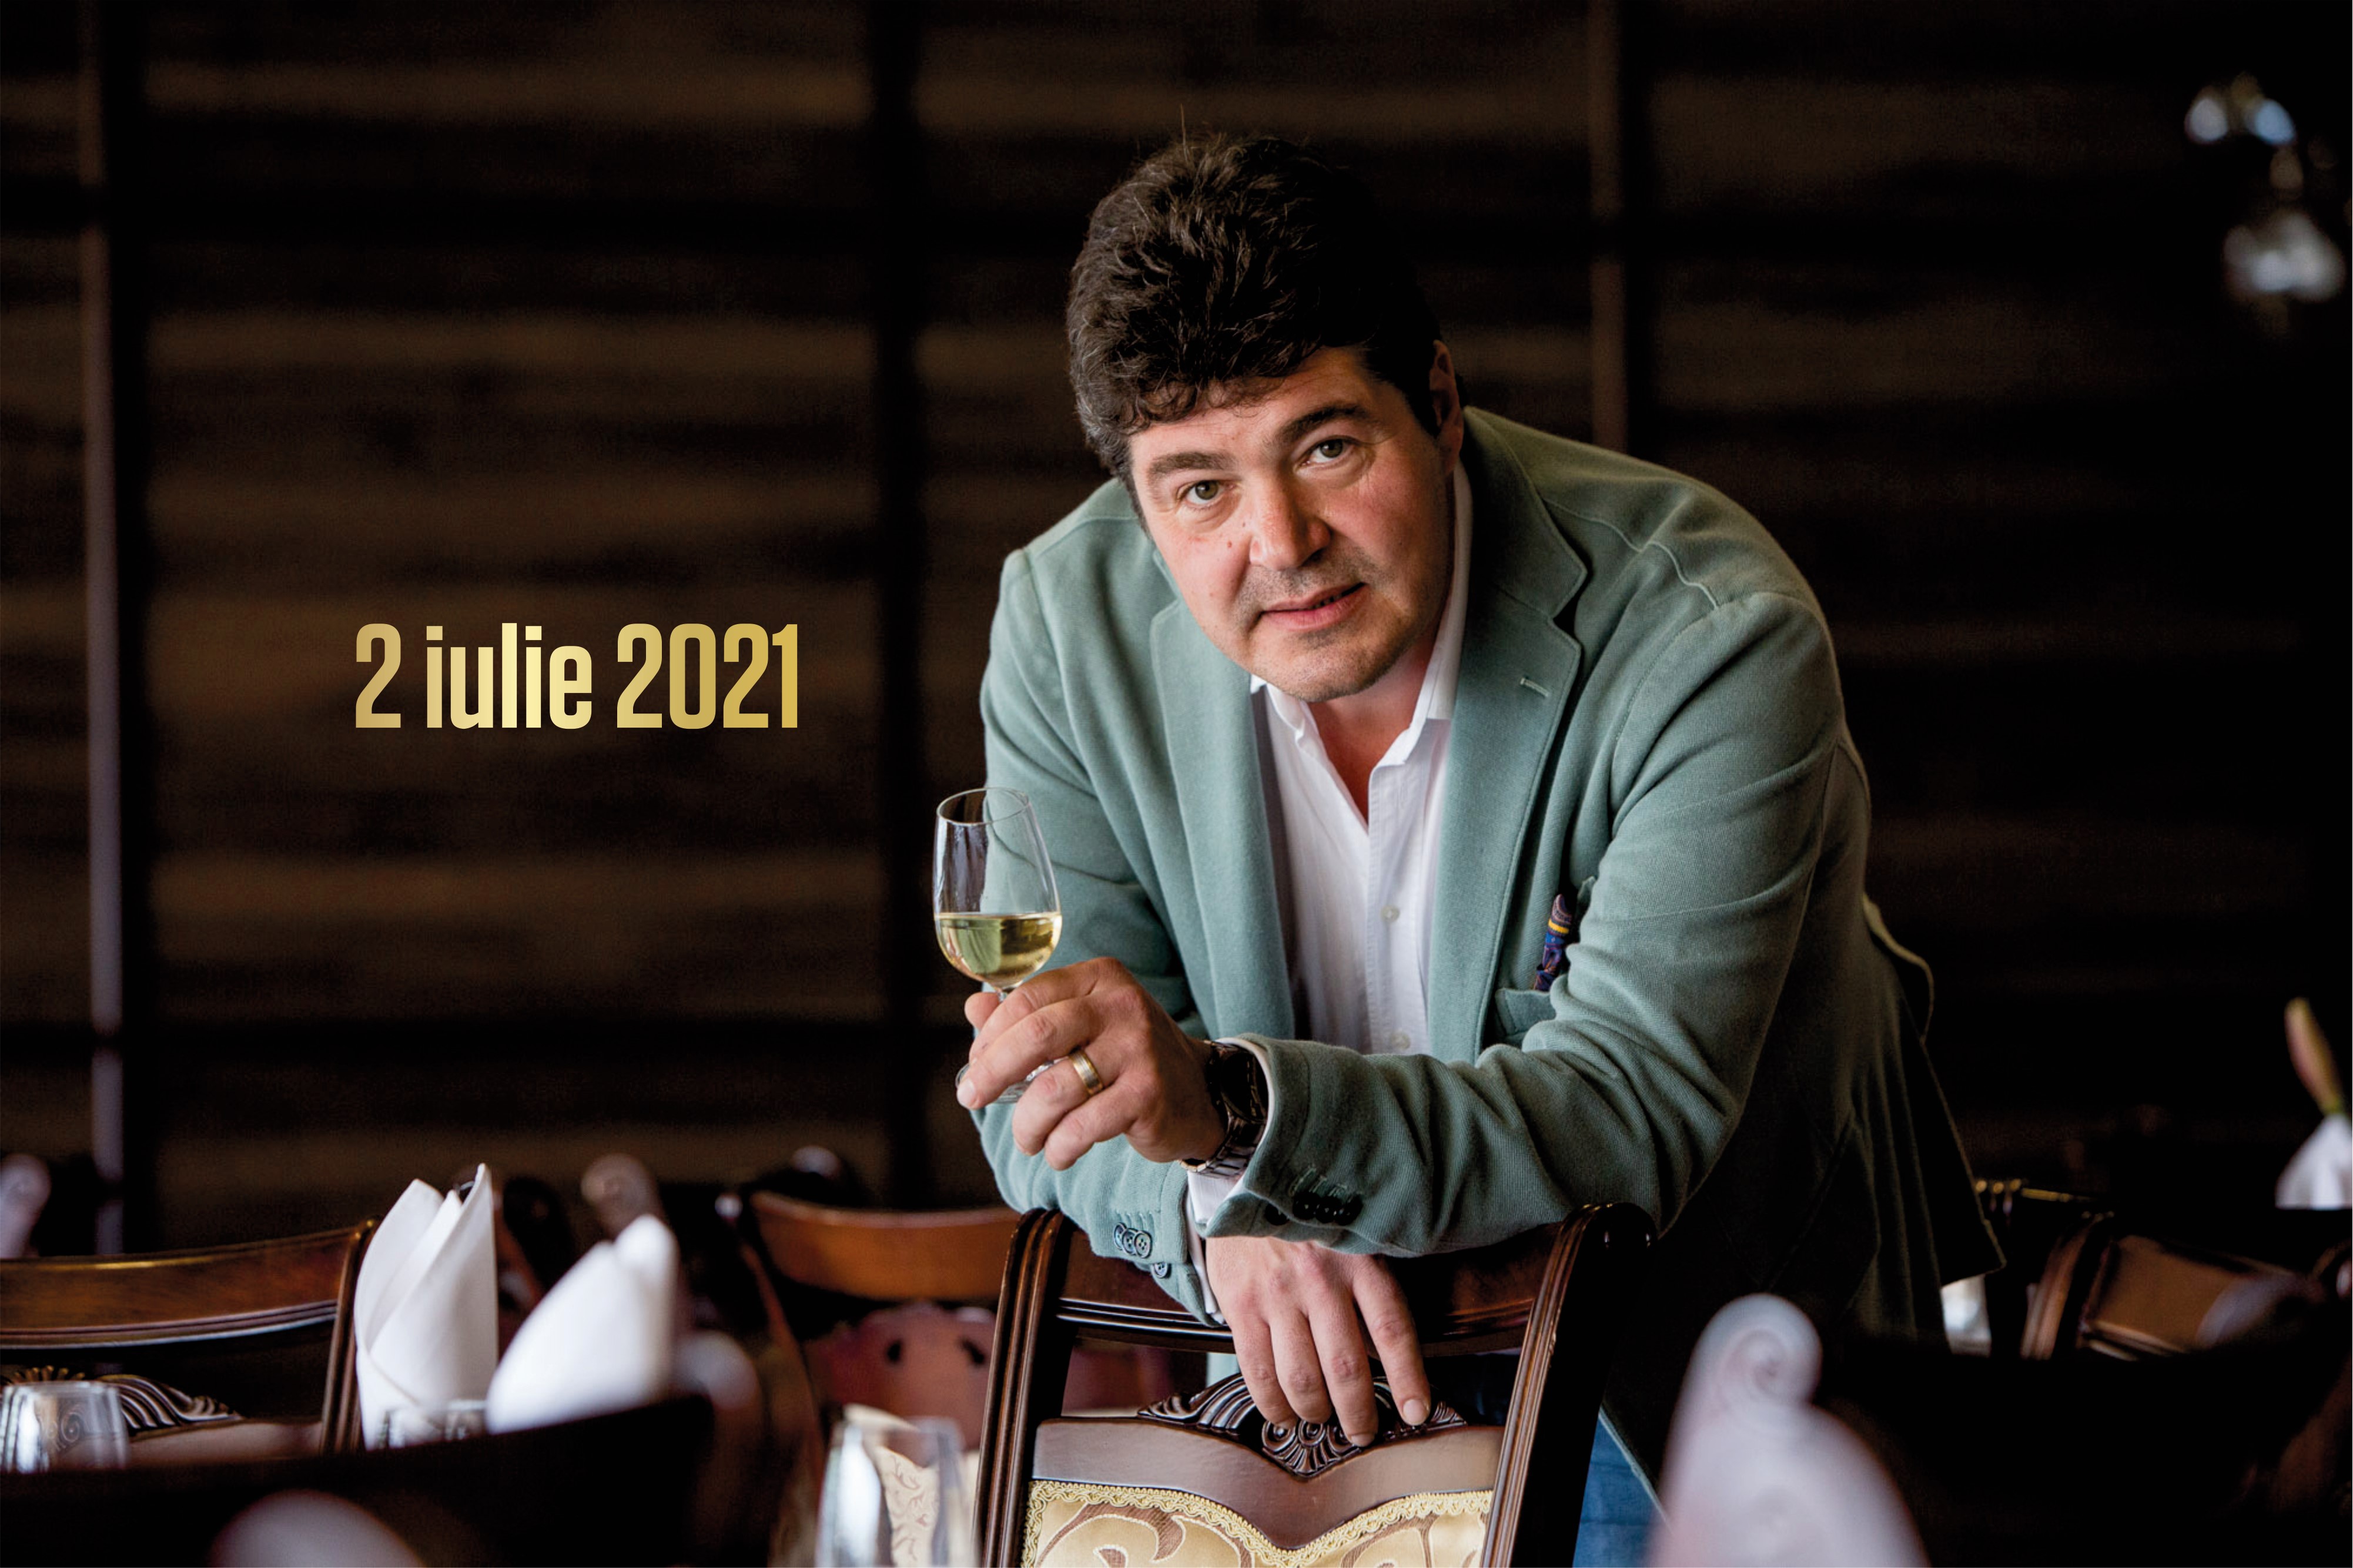 02 iulie 2021 – Paharul cu… visuri: Trei întrebări spinoase şi trei vinuri gustoase. Recomandările lui Cătălin PĂDURARU – VINARIUM